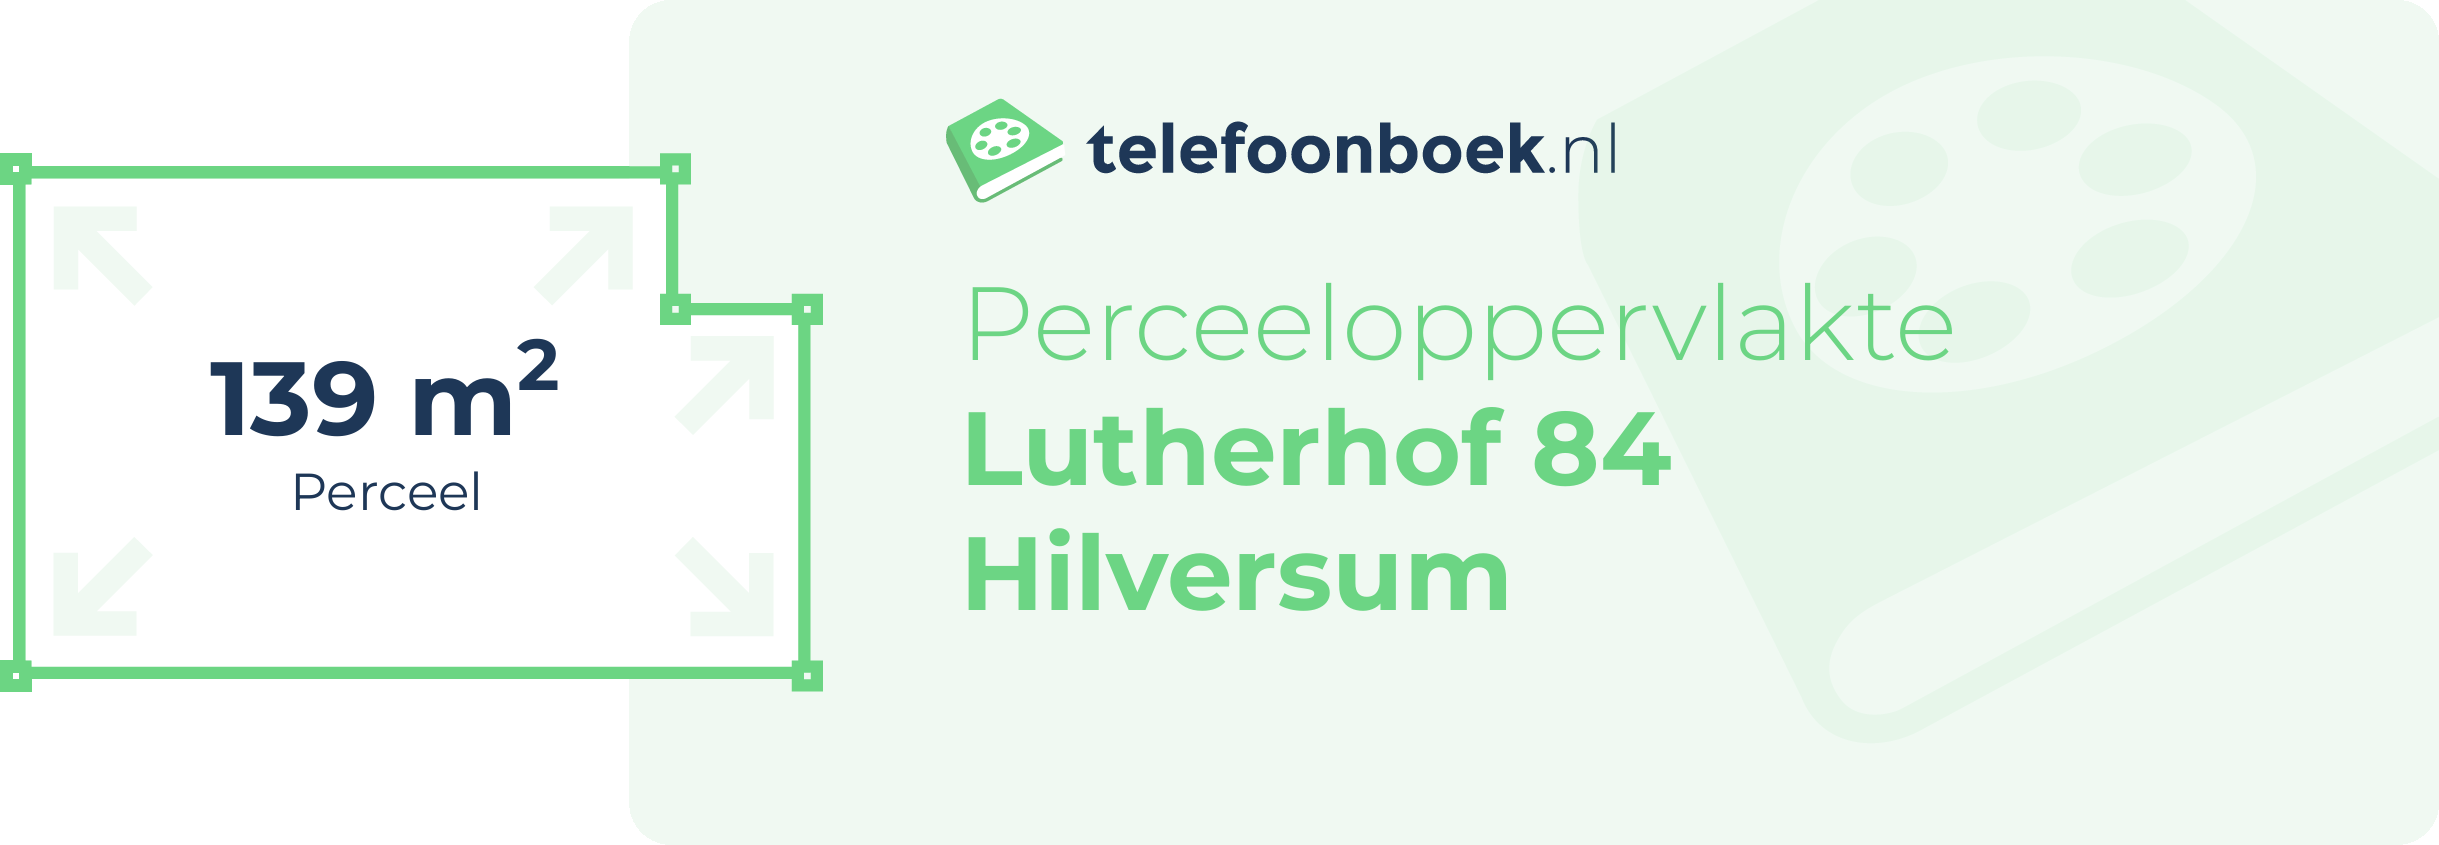 Perceeloppervlakte Lutherhof 84 Hilversum